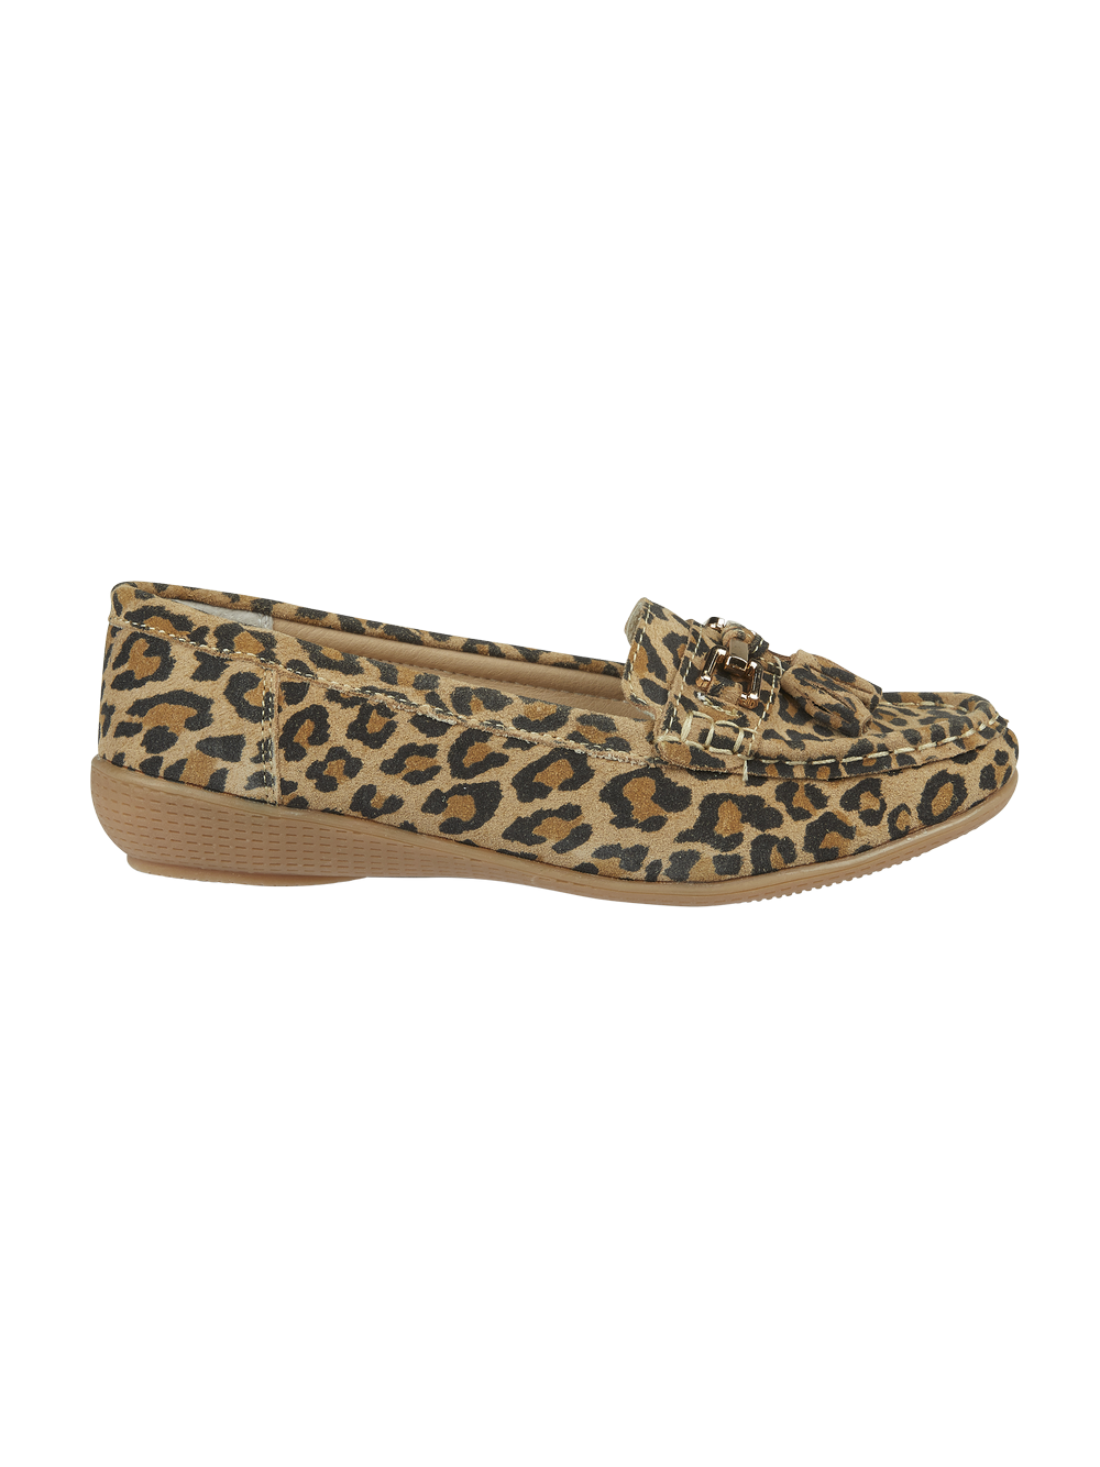 Jo & Joe leather leopard print loafer 4-8